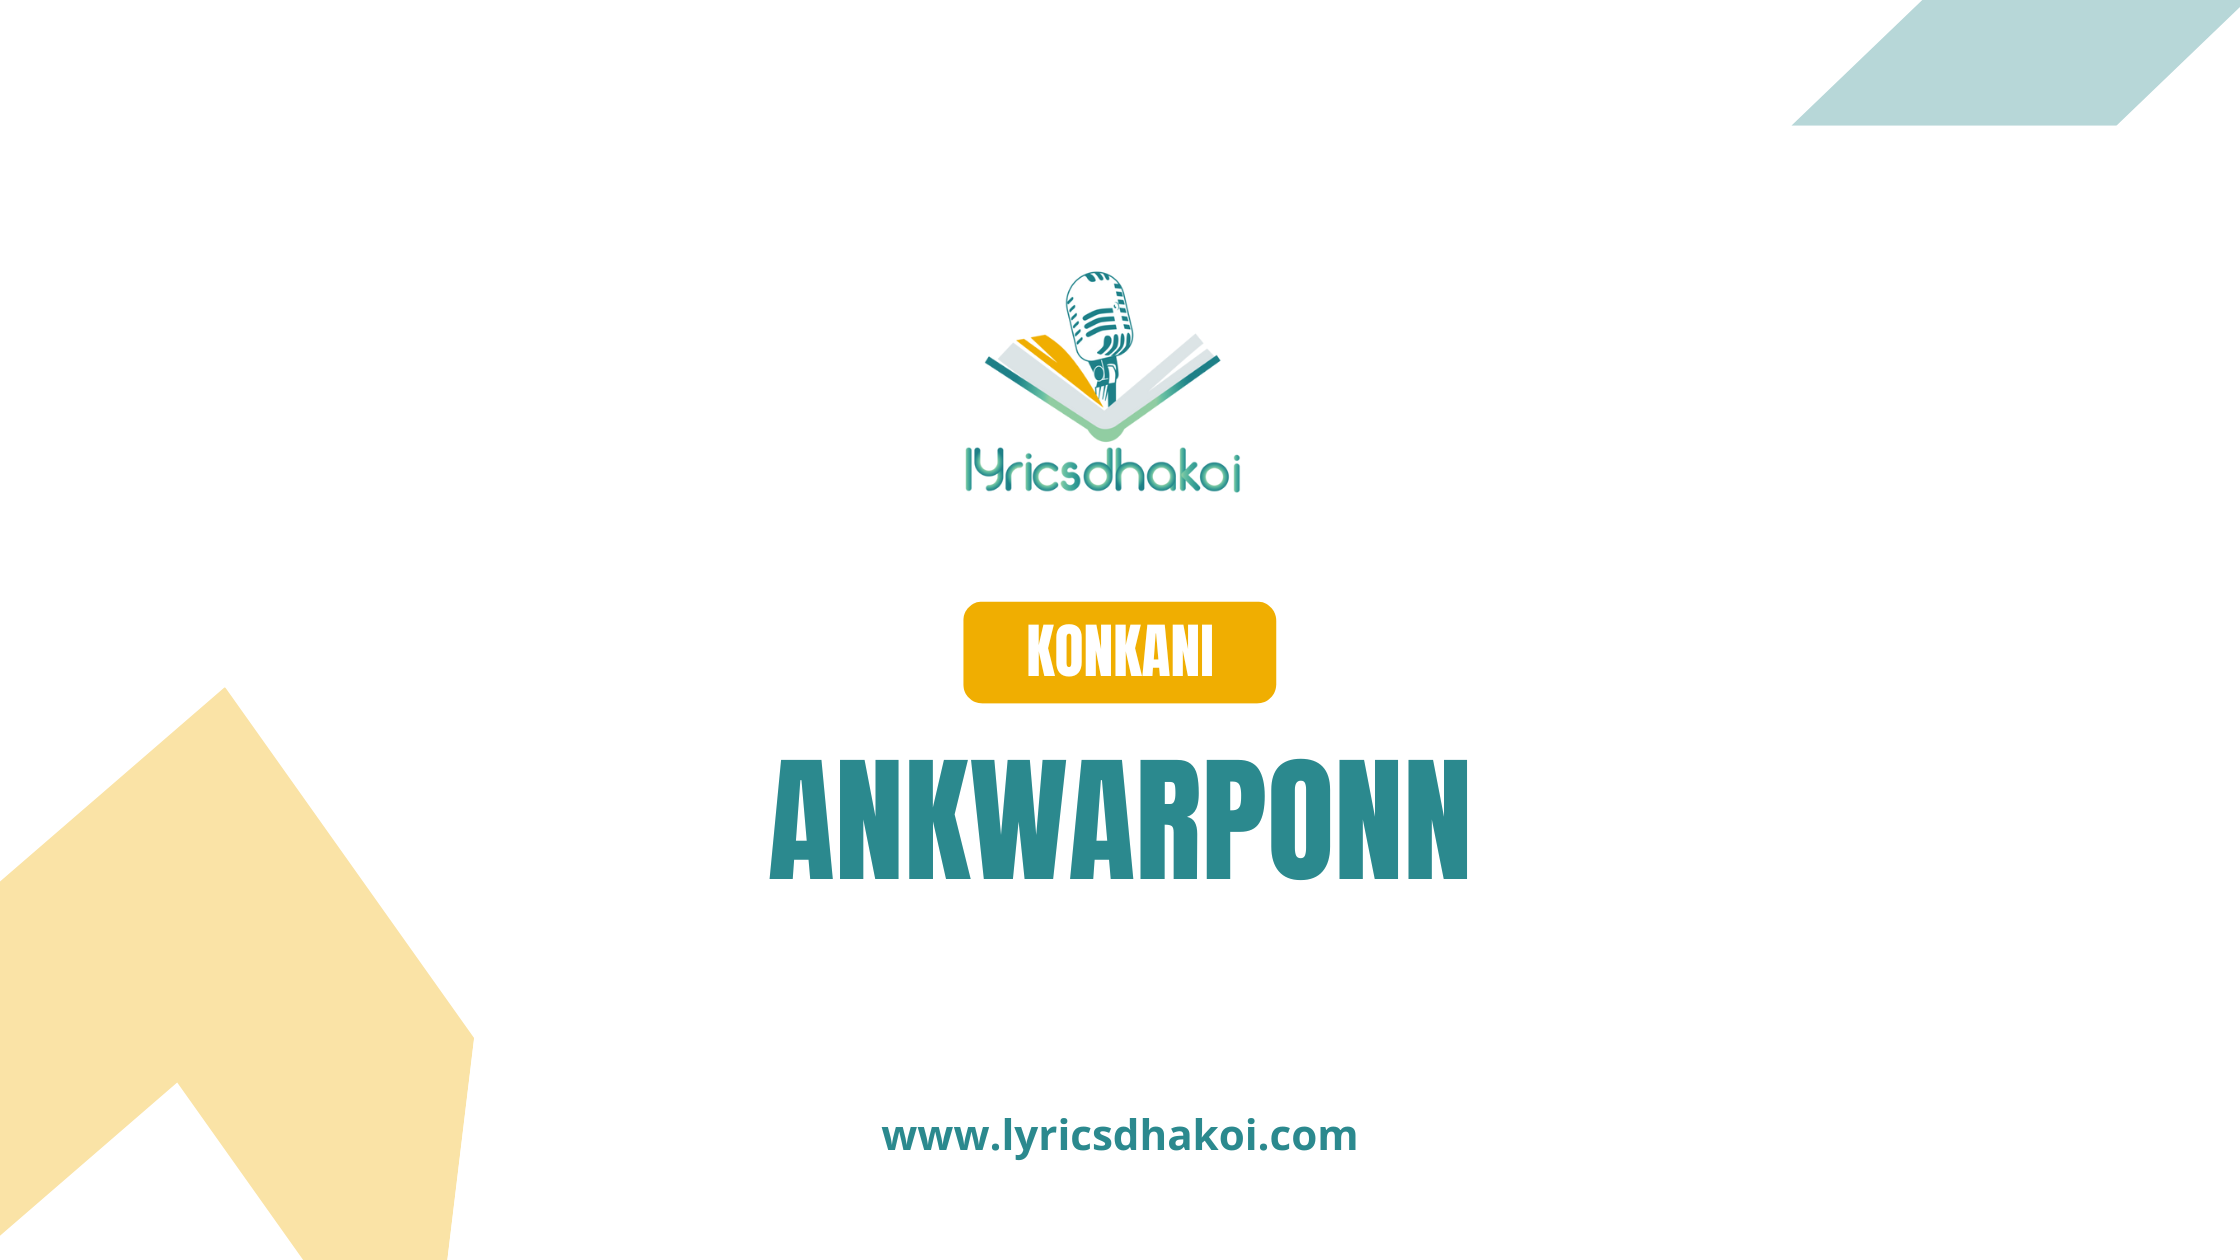 Ankwarponn Konkani Lyrics for Karaoke Online - LyricsDhakoi.com